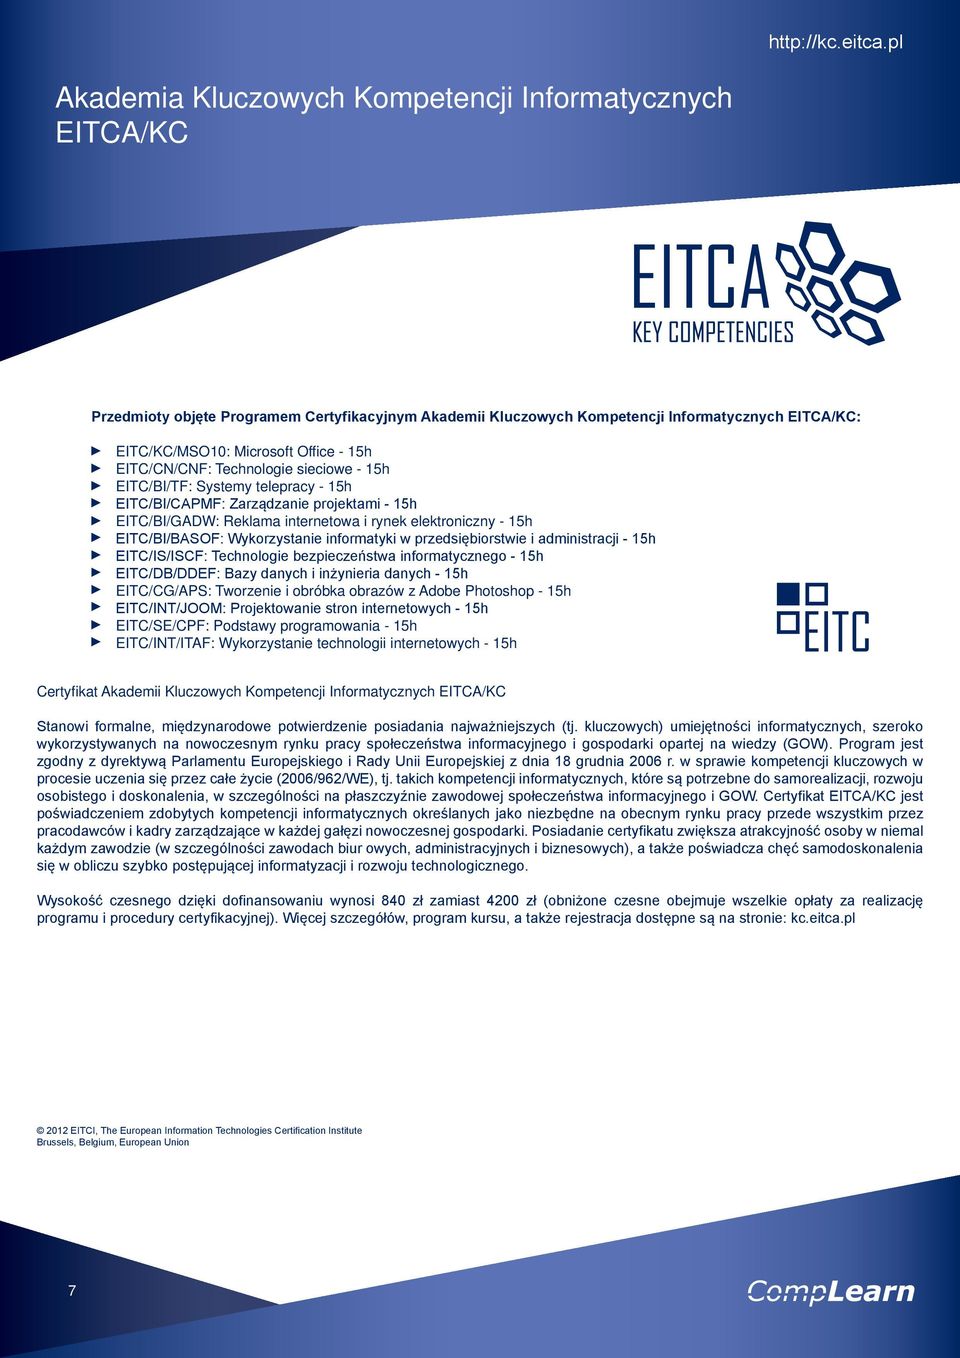 EITC/CN/CNF: Technologie sieciowe - 15h EITC/BI/TF: Systemy telepracy - 15h EITC/BI/CAPMF: Zarządzanie projektami - 15h EITC/BI/GADW: Reklama internetowa i rynek elektroniczny - 15h EITC/BI/BASOF: